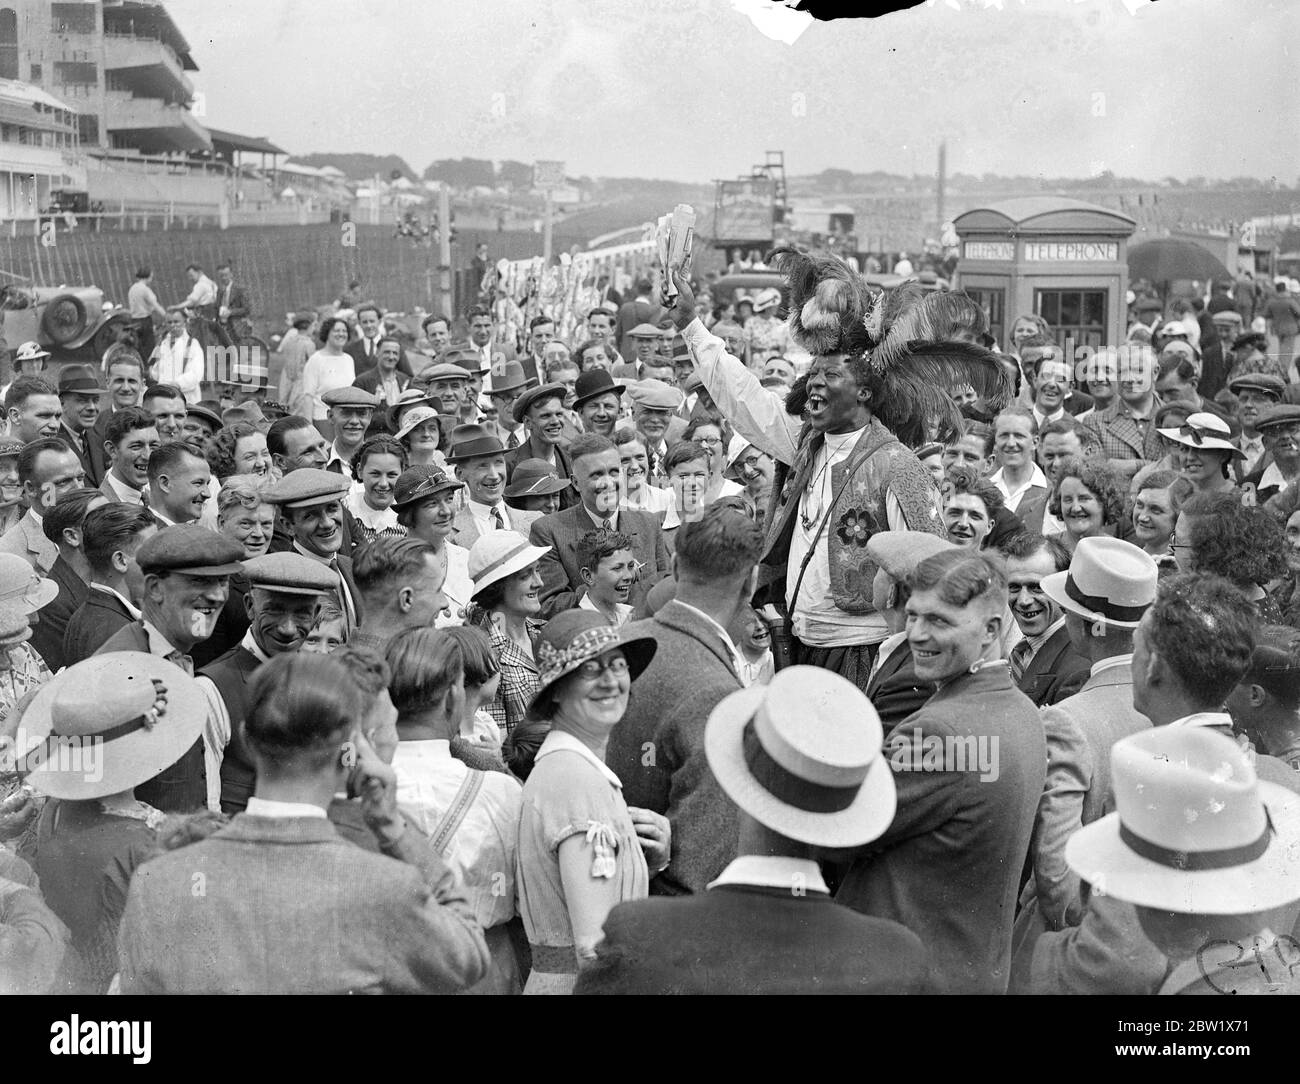 Prinz Monolulu gibt seinen Derby-Tipp an die Sonntagsmassen. Begünstigt durch echtes Sommerwetter versammelten sich große Menschenmassen, um den Derby-Kurs in Epsom heute (Derby Sonntag) zu inspizieren. Alle bunten Figuren, die Derby Day Racing das berühmteste Ereignis machen, waren auf dem Platz. Foto zeigt, Ras Prince Monolulu gibt seine Derby Reise an die große Menge auf dem Platz heute, (Derby Sonntag). 30 Mai 1937 Stockfoto